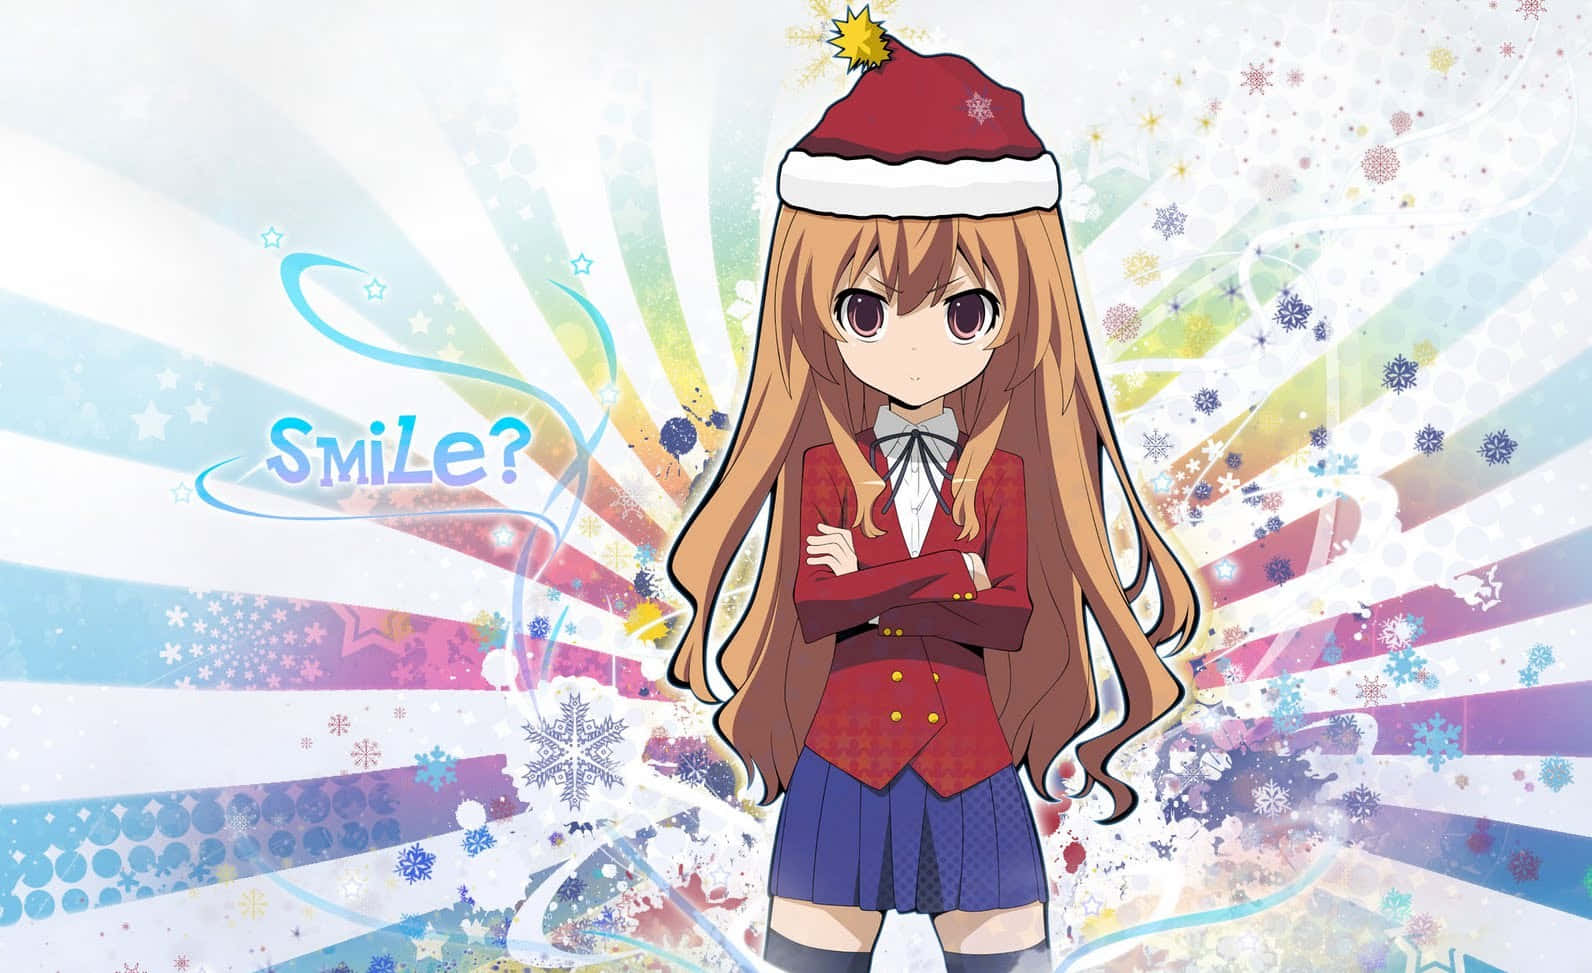 Spridjulglädje Med Denna Festliga Anime Julsyntes!